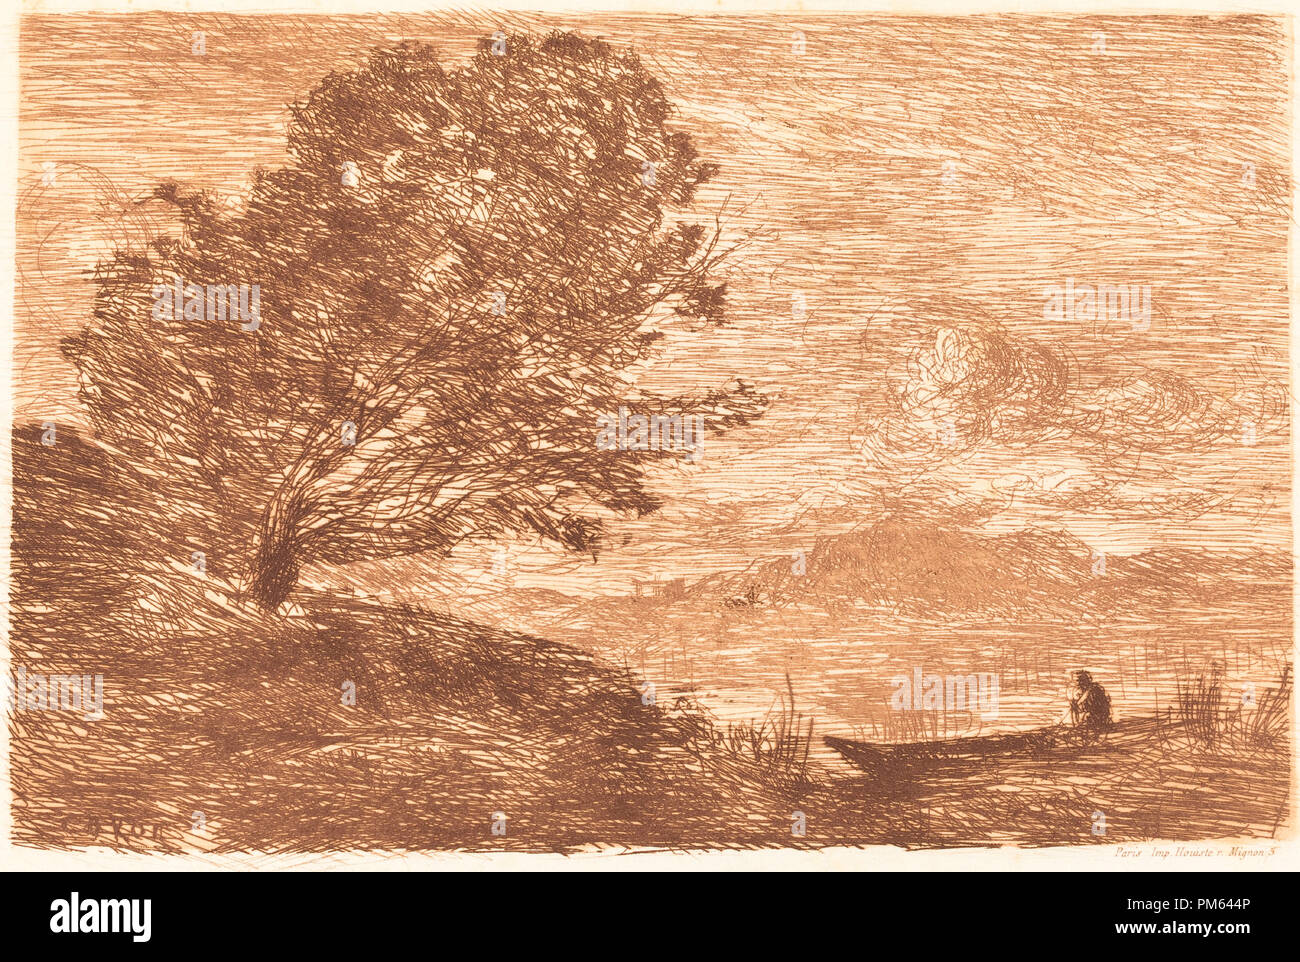 Un lac dans le Tyrol (un lac du Tyrol). En date du : 1863. Dimensions : image : 11,5 x 17,3 cm (4 1/2 x 6 in.) 13/16 : feuille 18,1 x 27,2 cm (7 1/8 x 10 11/16 po.). Technique : gravure en rouge-brun sur papier vélin. Musée : National Gallery of Art, Washington DC. Auteur : Corot, Jean-Baptiste-Camille. Banque D'Images